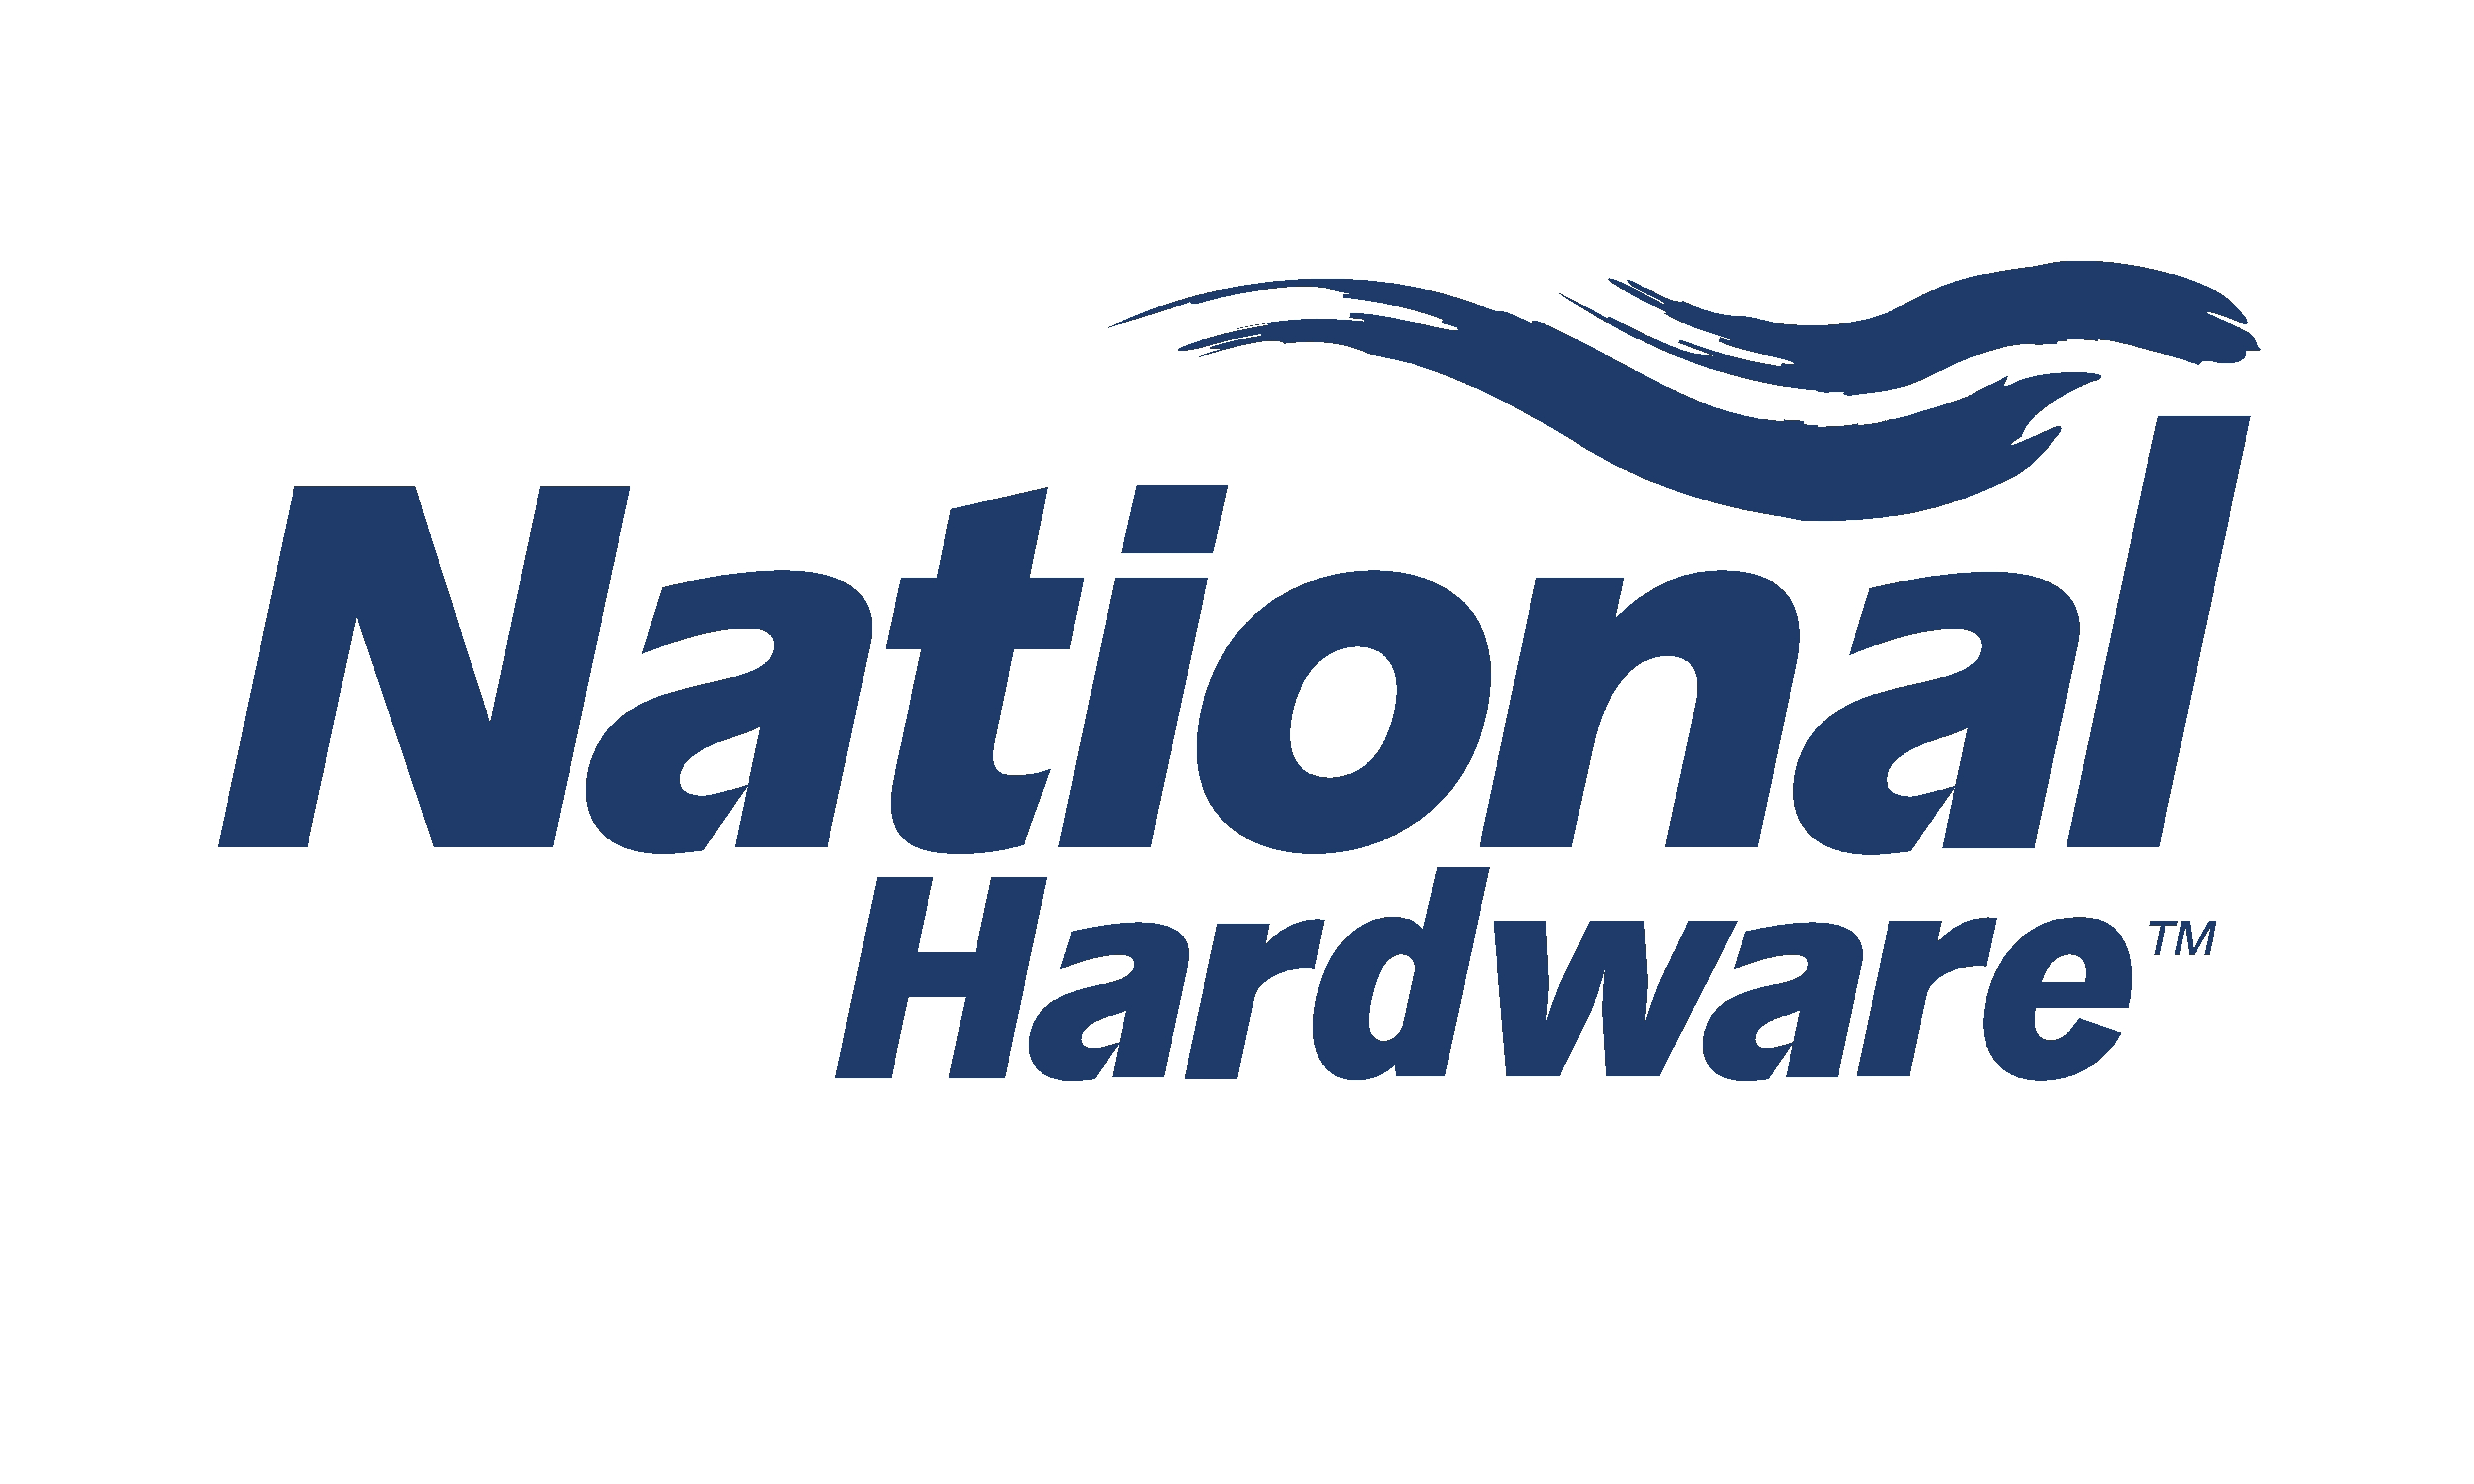 National Hardware logo